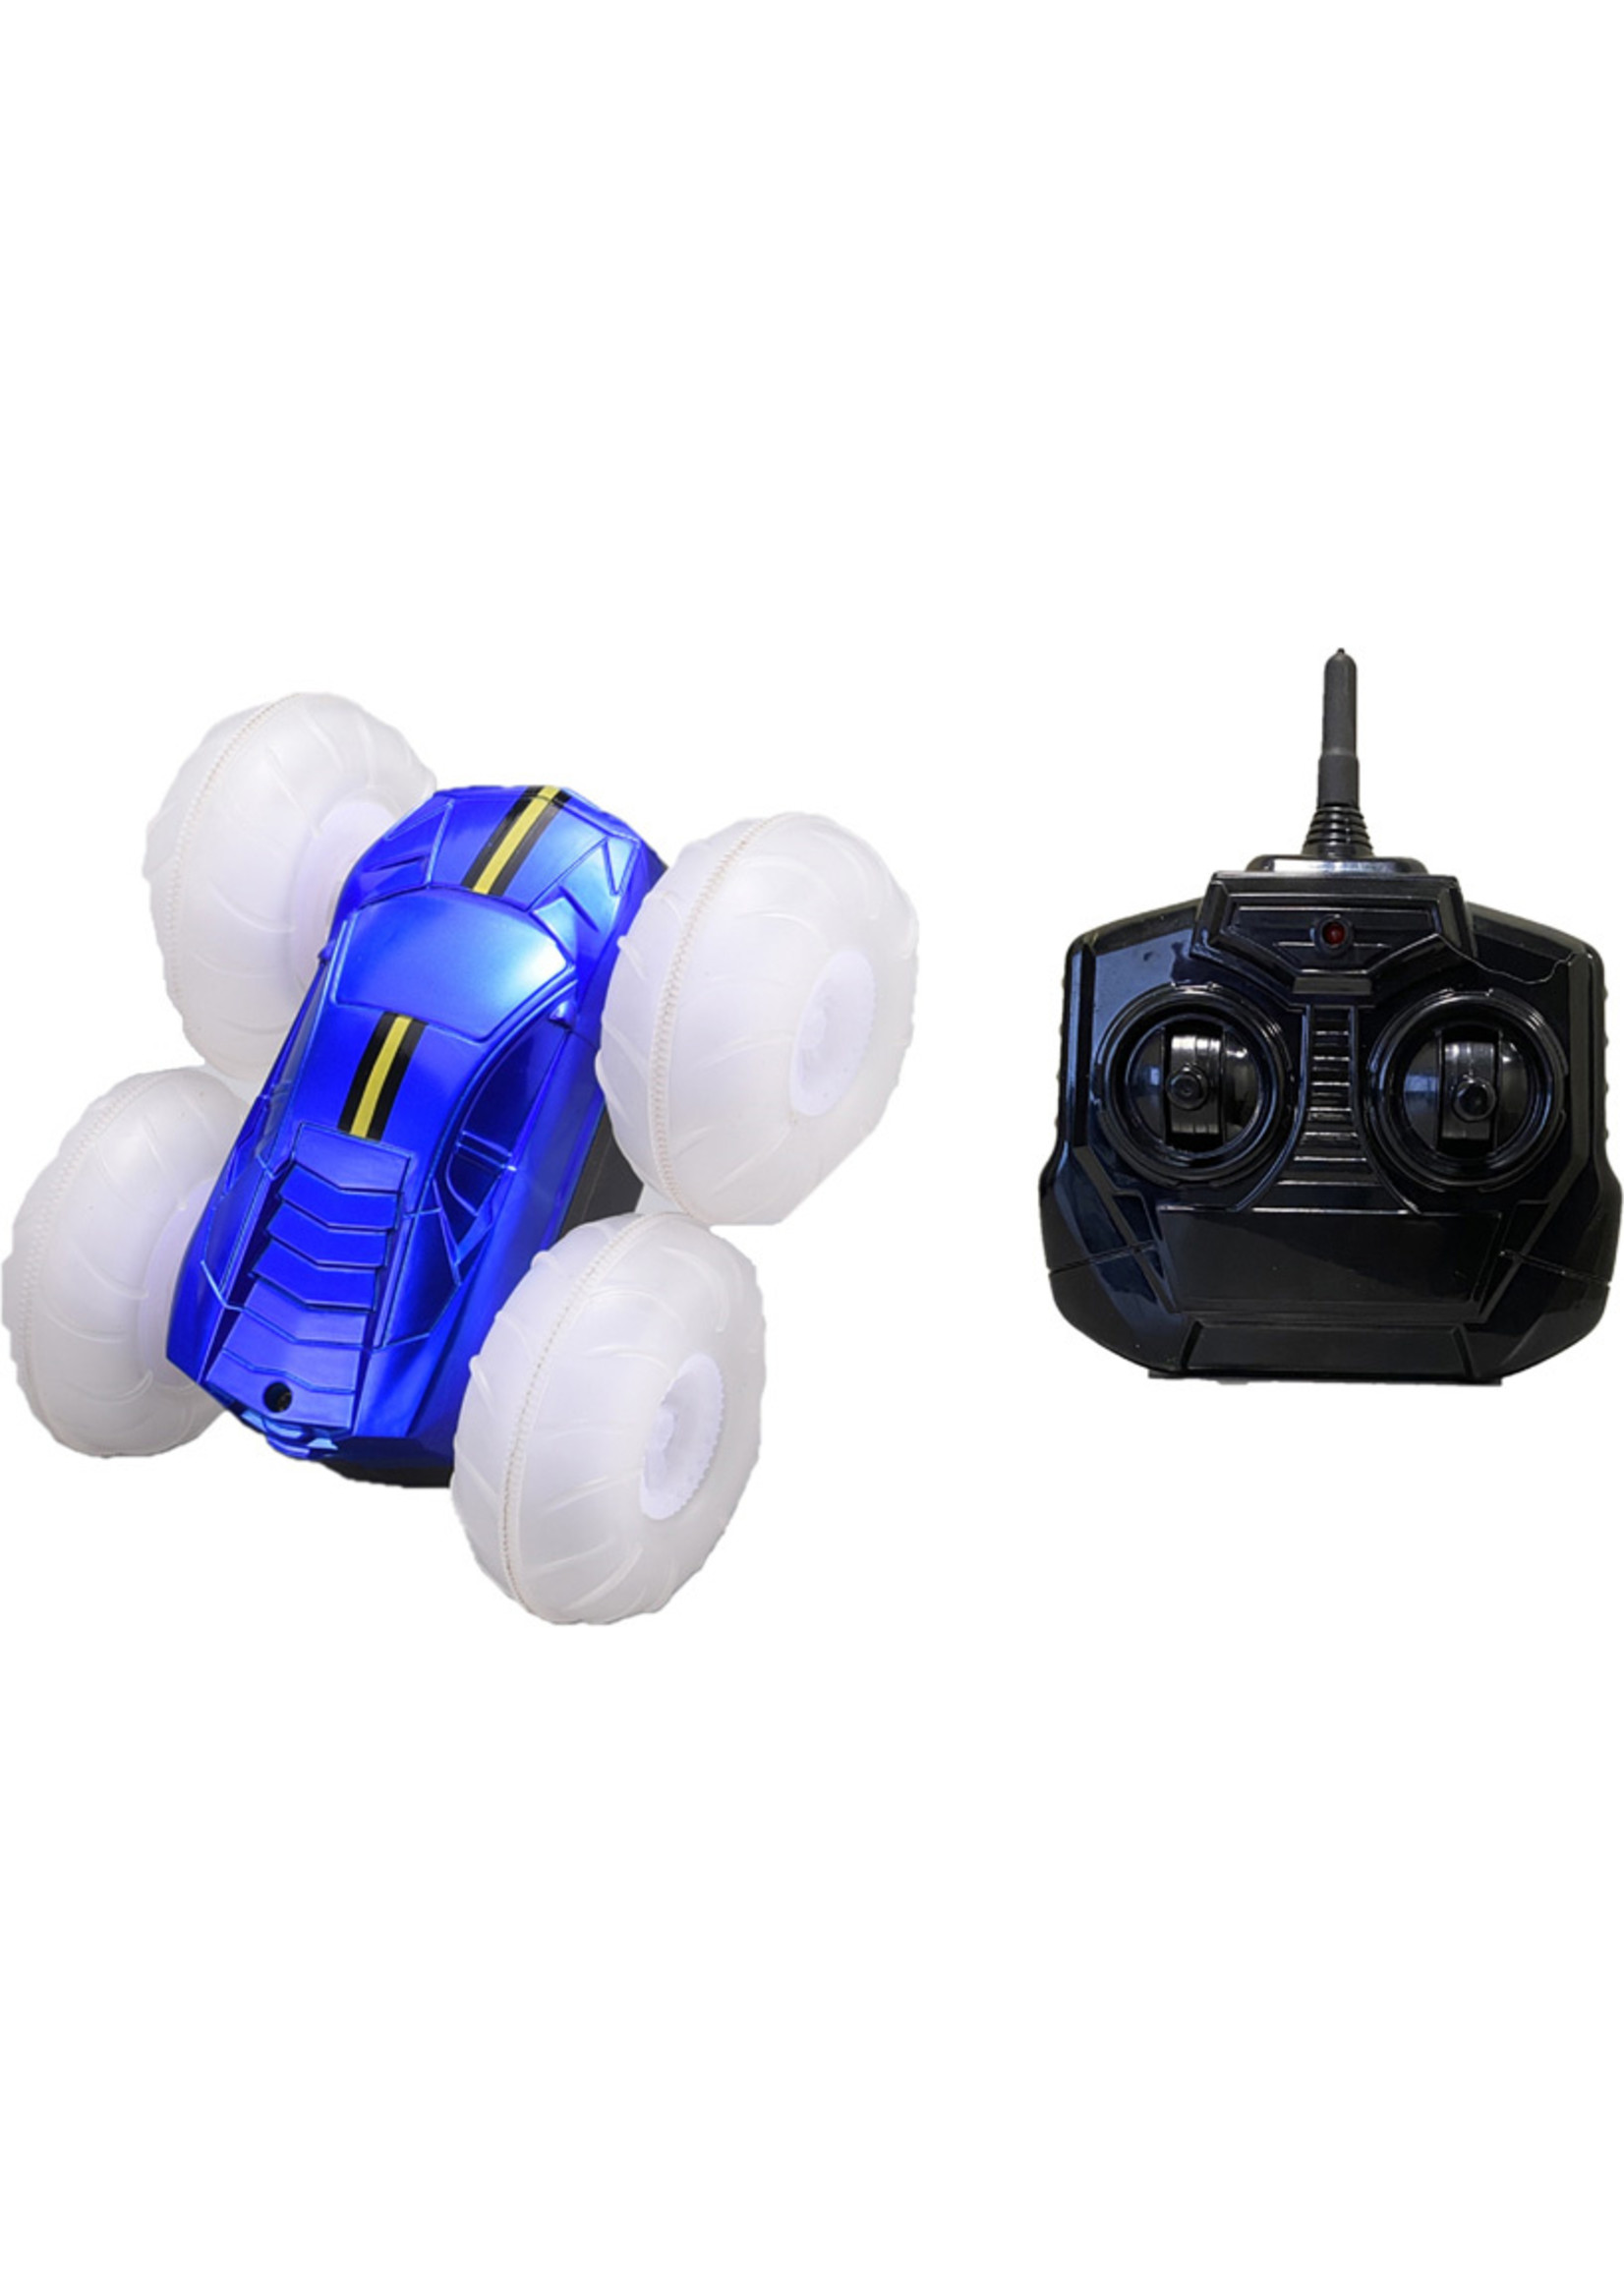 Mindscope Turbo Twister Flip Racer- Blue